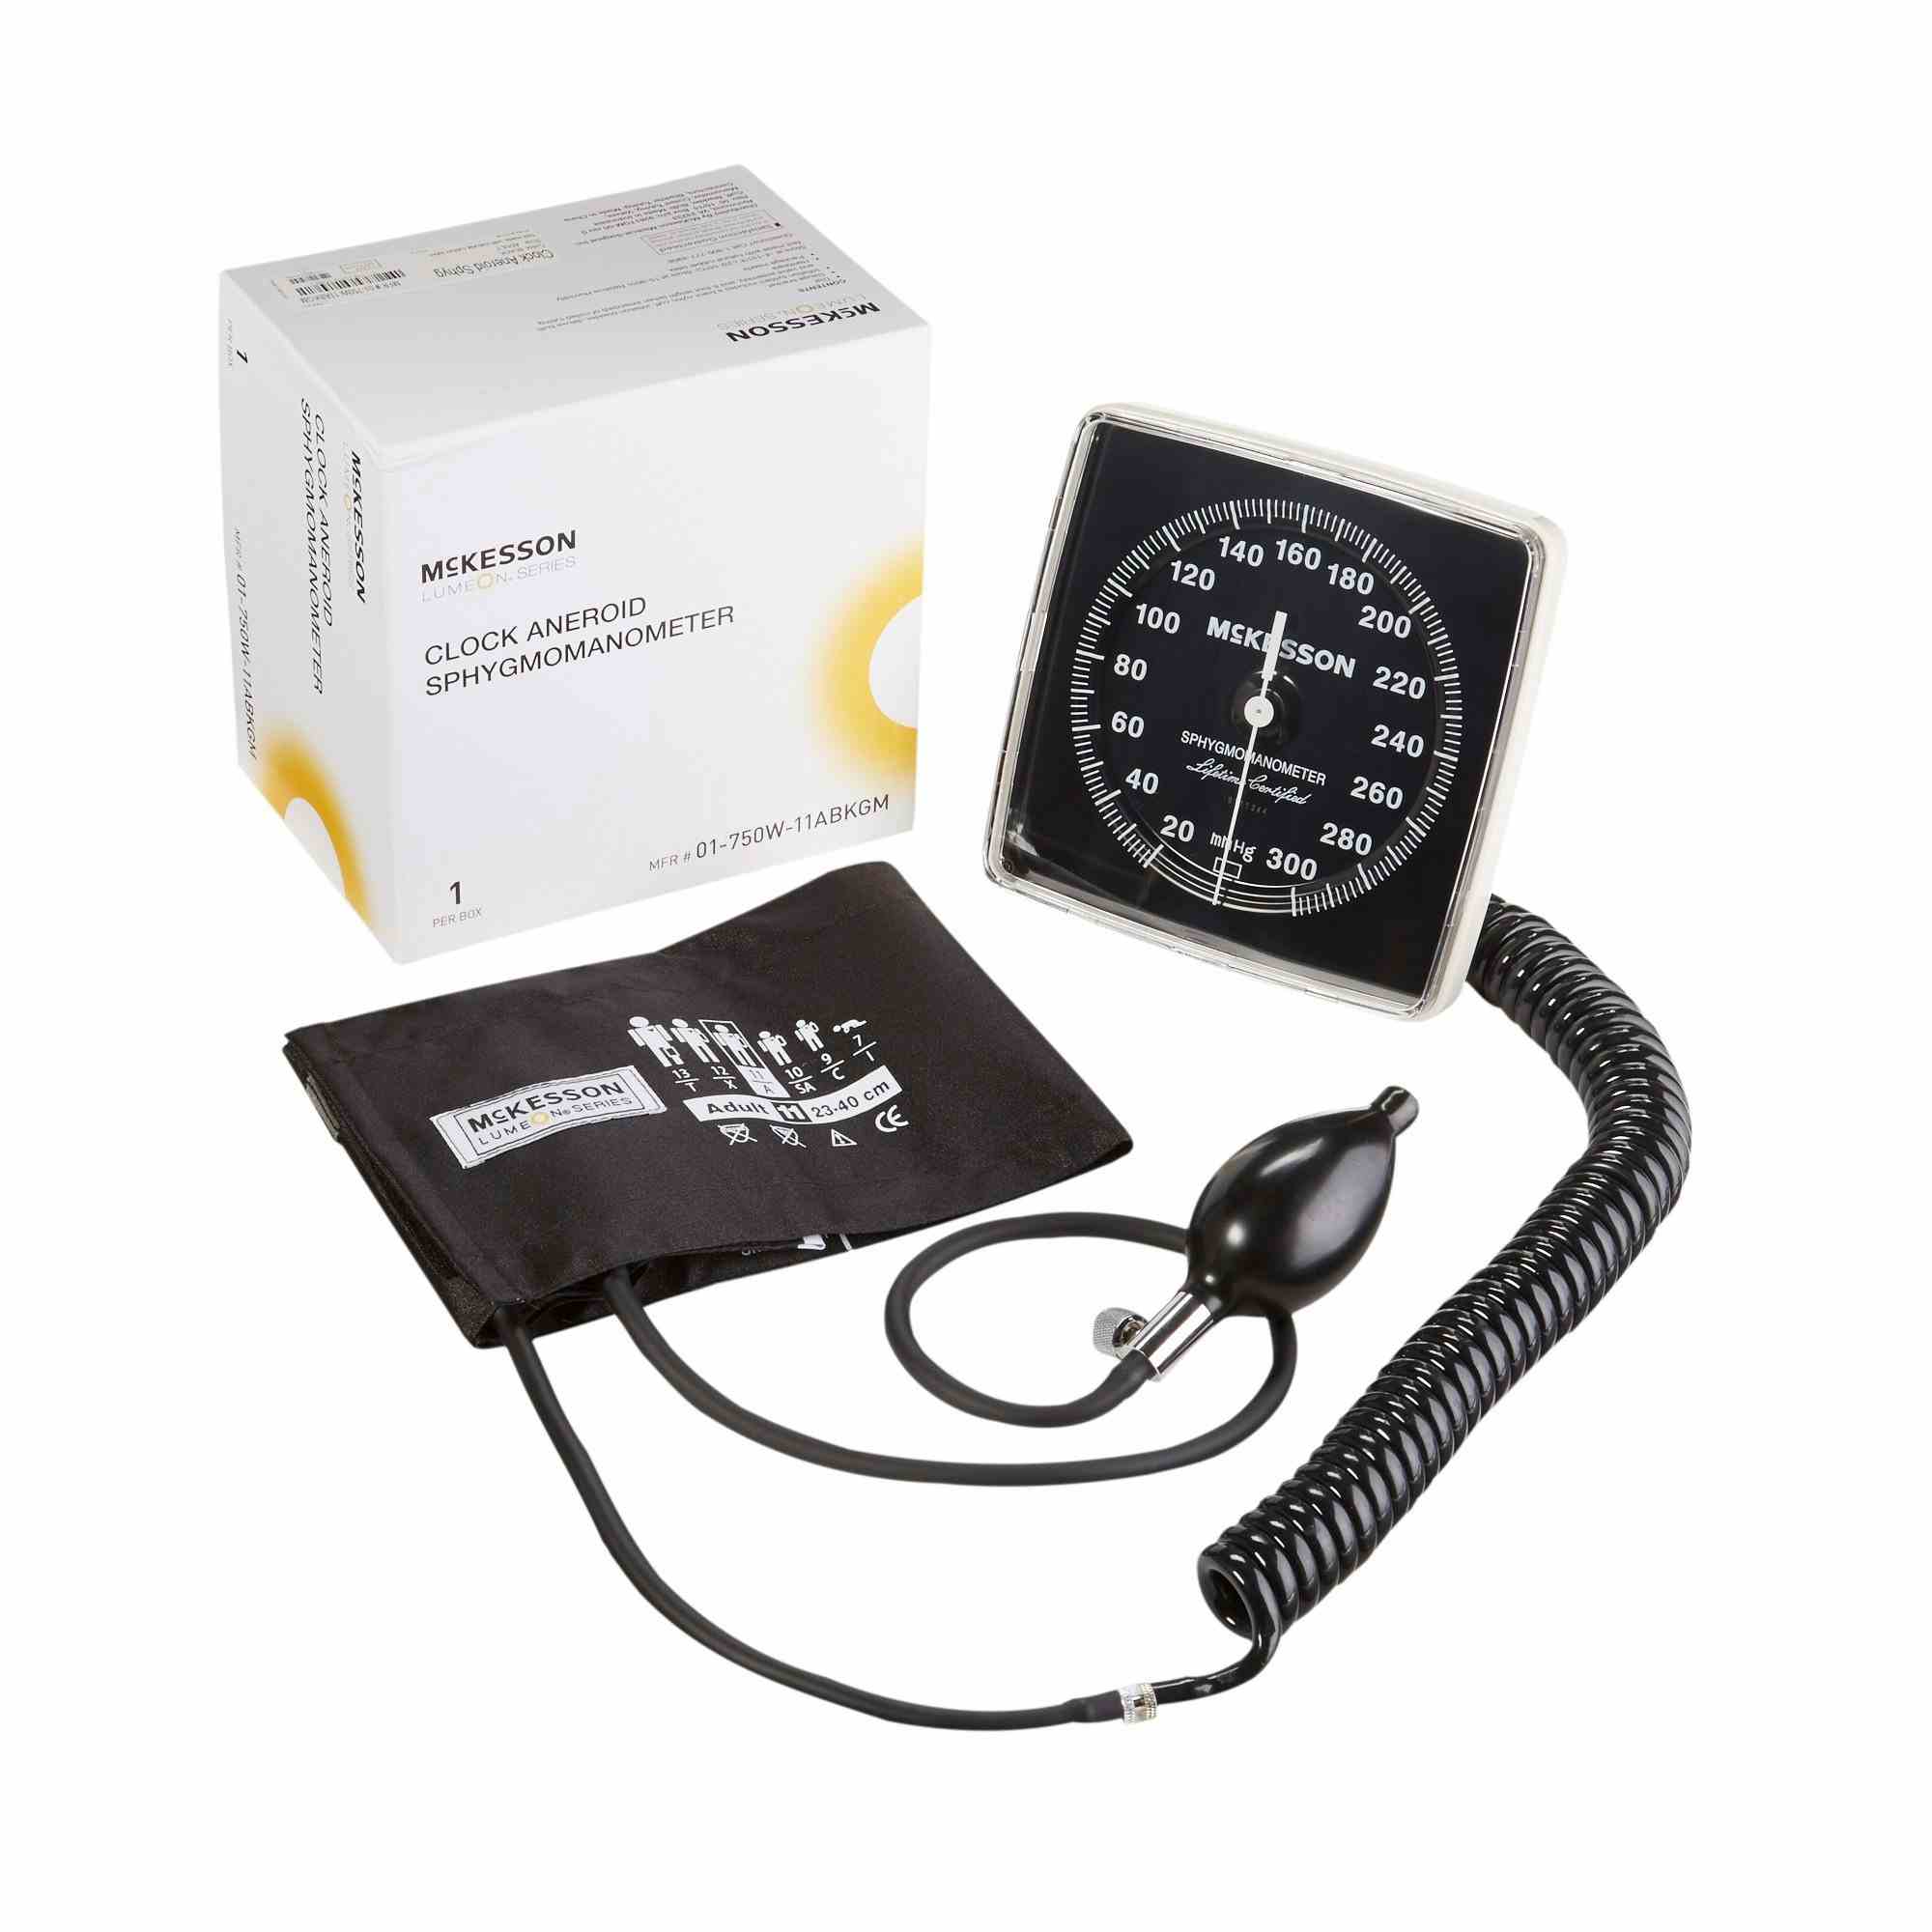 McKesson Clock Aneroid Sphygmomanometer Unit, 01-750W-11ABKGM, 1 Box